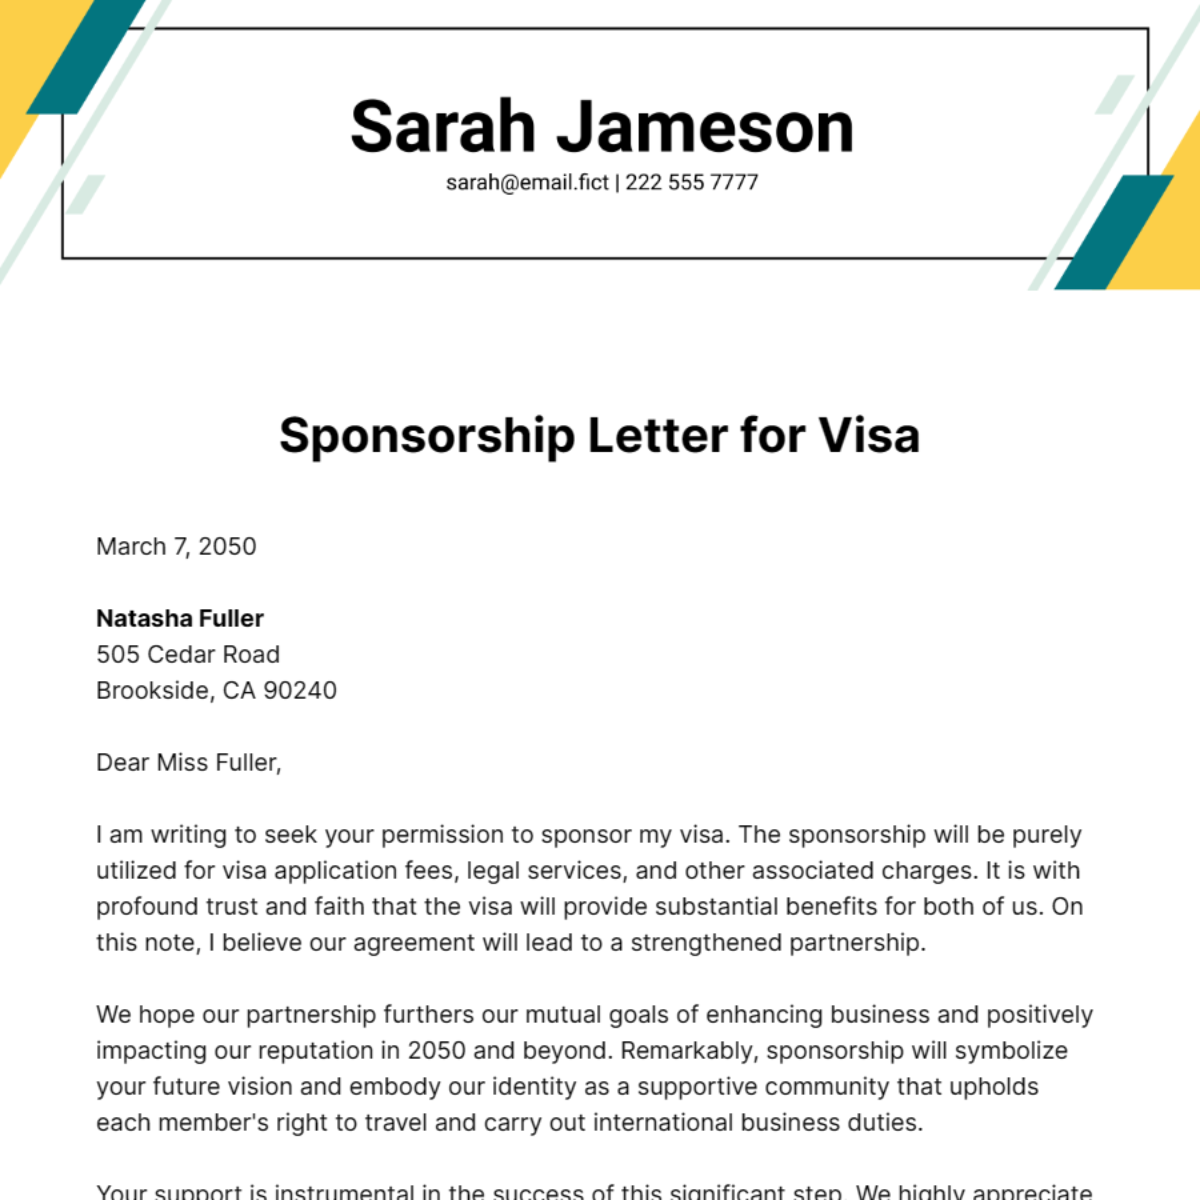 Sponsorship Letter for Visa Template